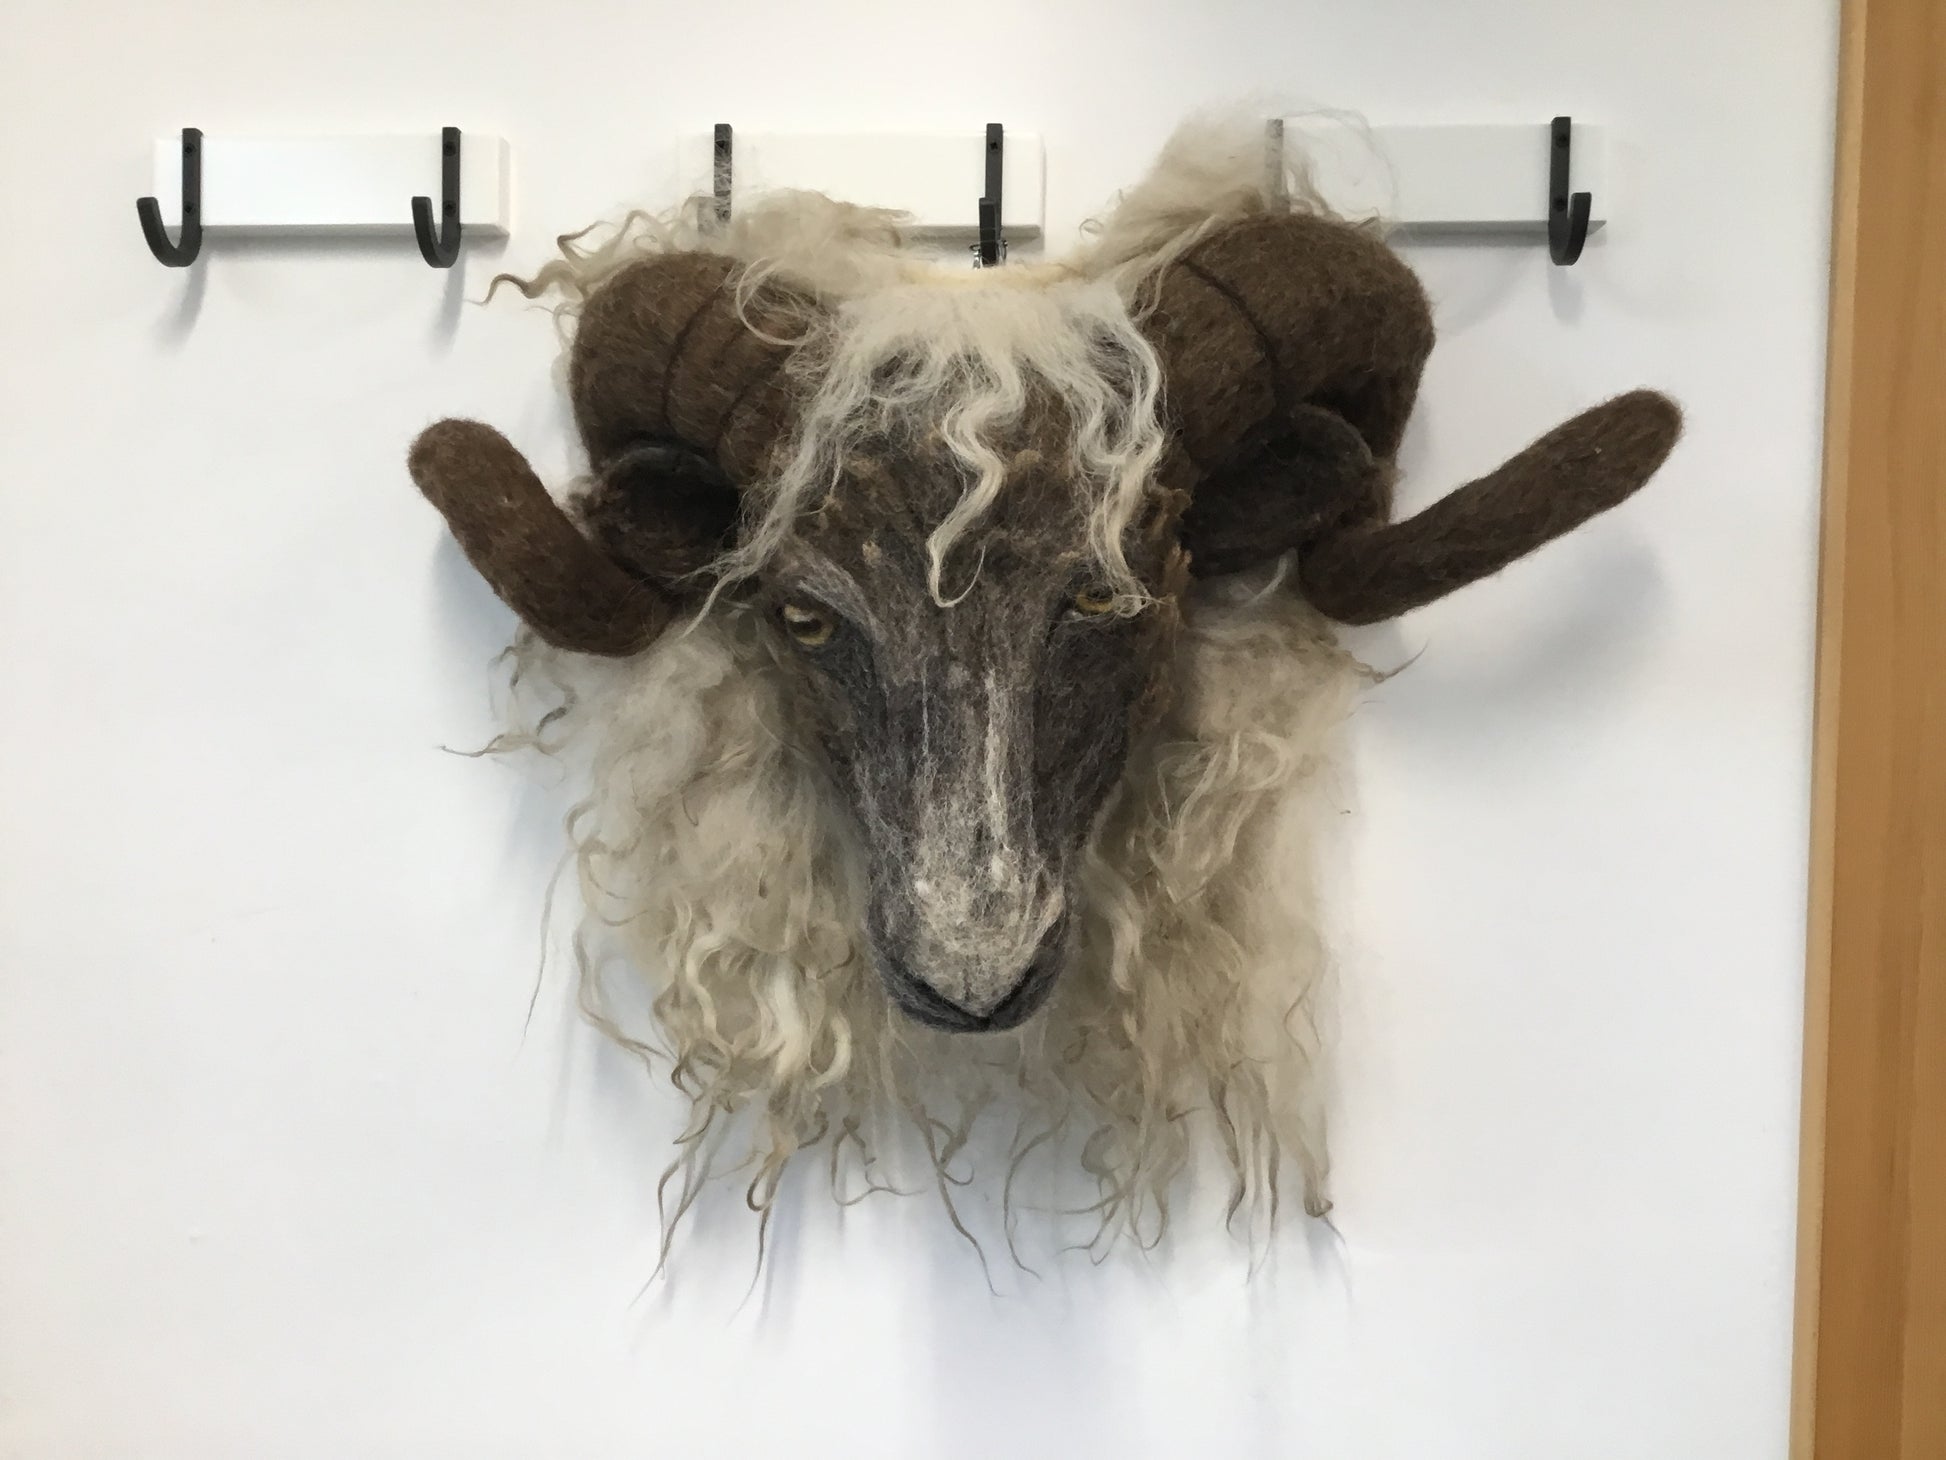 hij ziet er echt uit, maar deze schapenkop is volledig uit wol opgebouwd en met behulp van speciale viltnaalden tot dit levensgroot en levensecht geheel gevilt